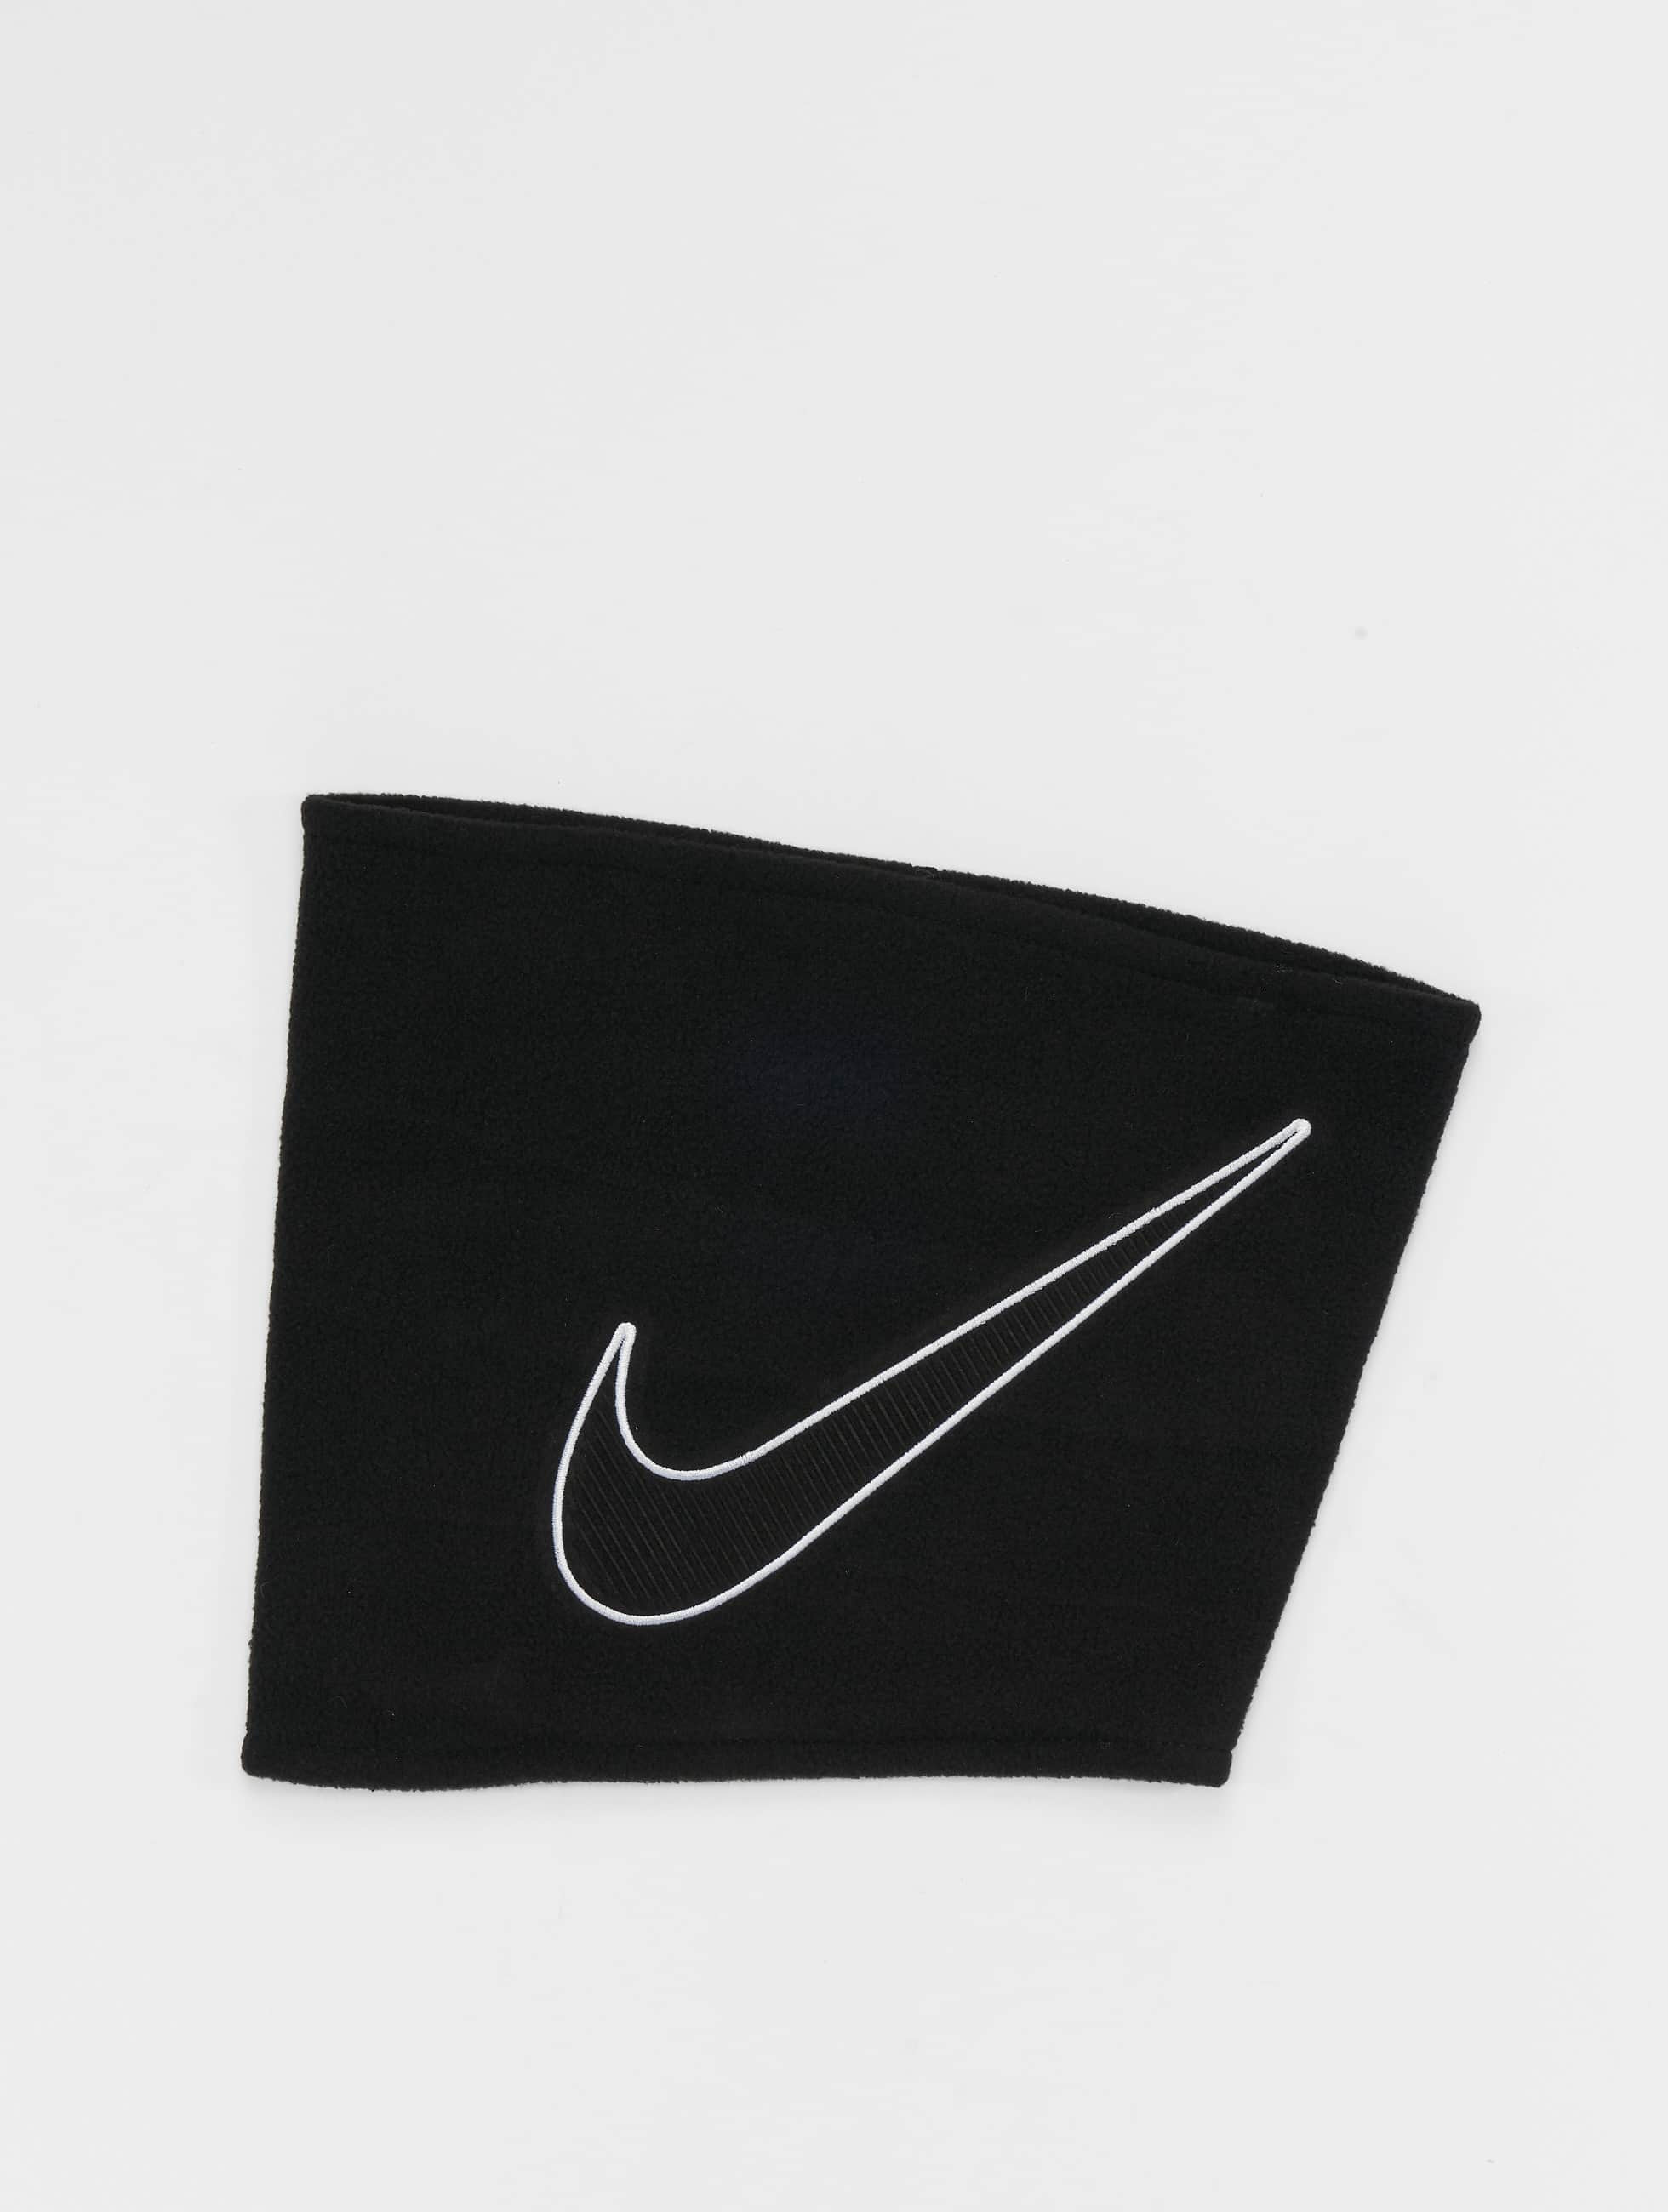 Misericordioso Civil Conciso Nike Accesorios / Chal / pañuelo Fleece Neckwarmer 2.0 en negro 954471